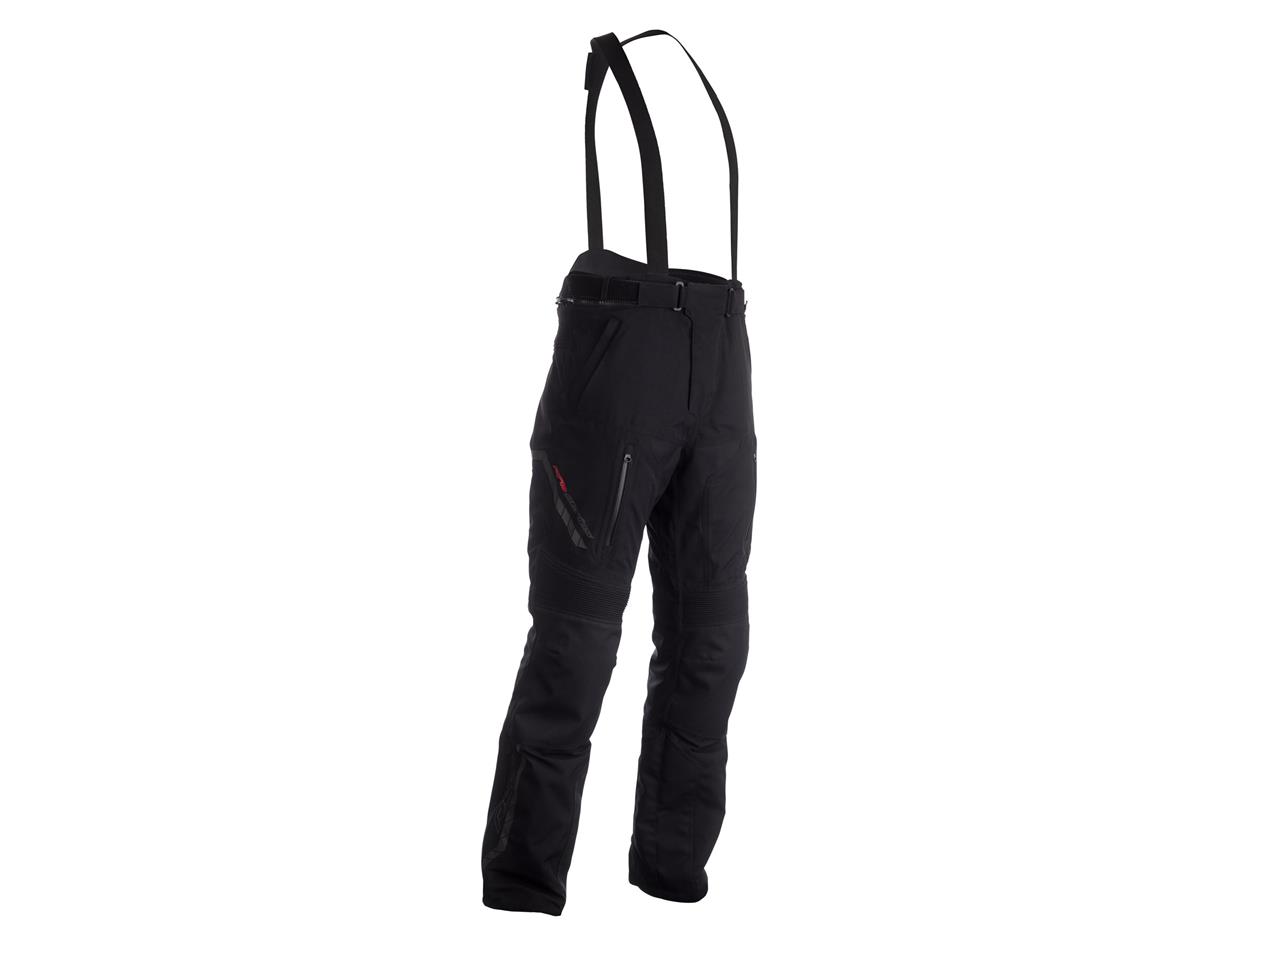 Pantalon RST Pathfinder CE textile noir homme